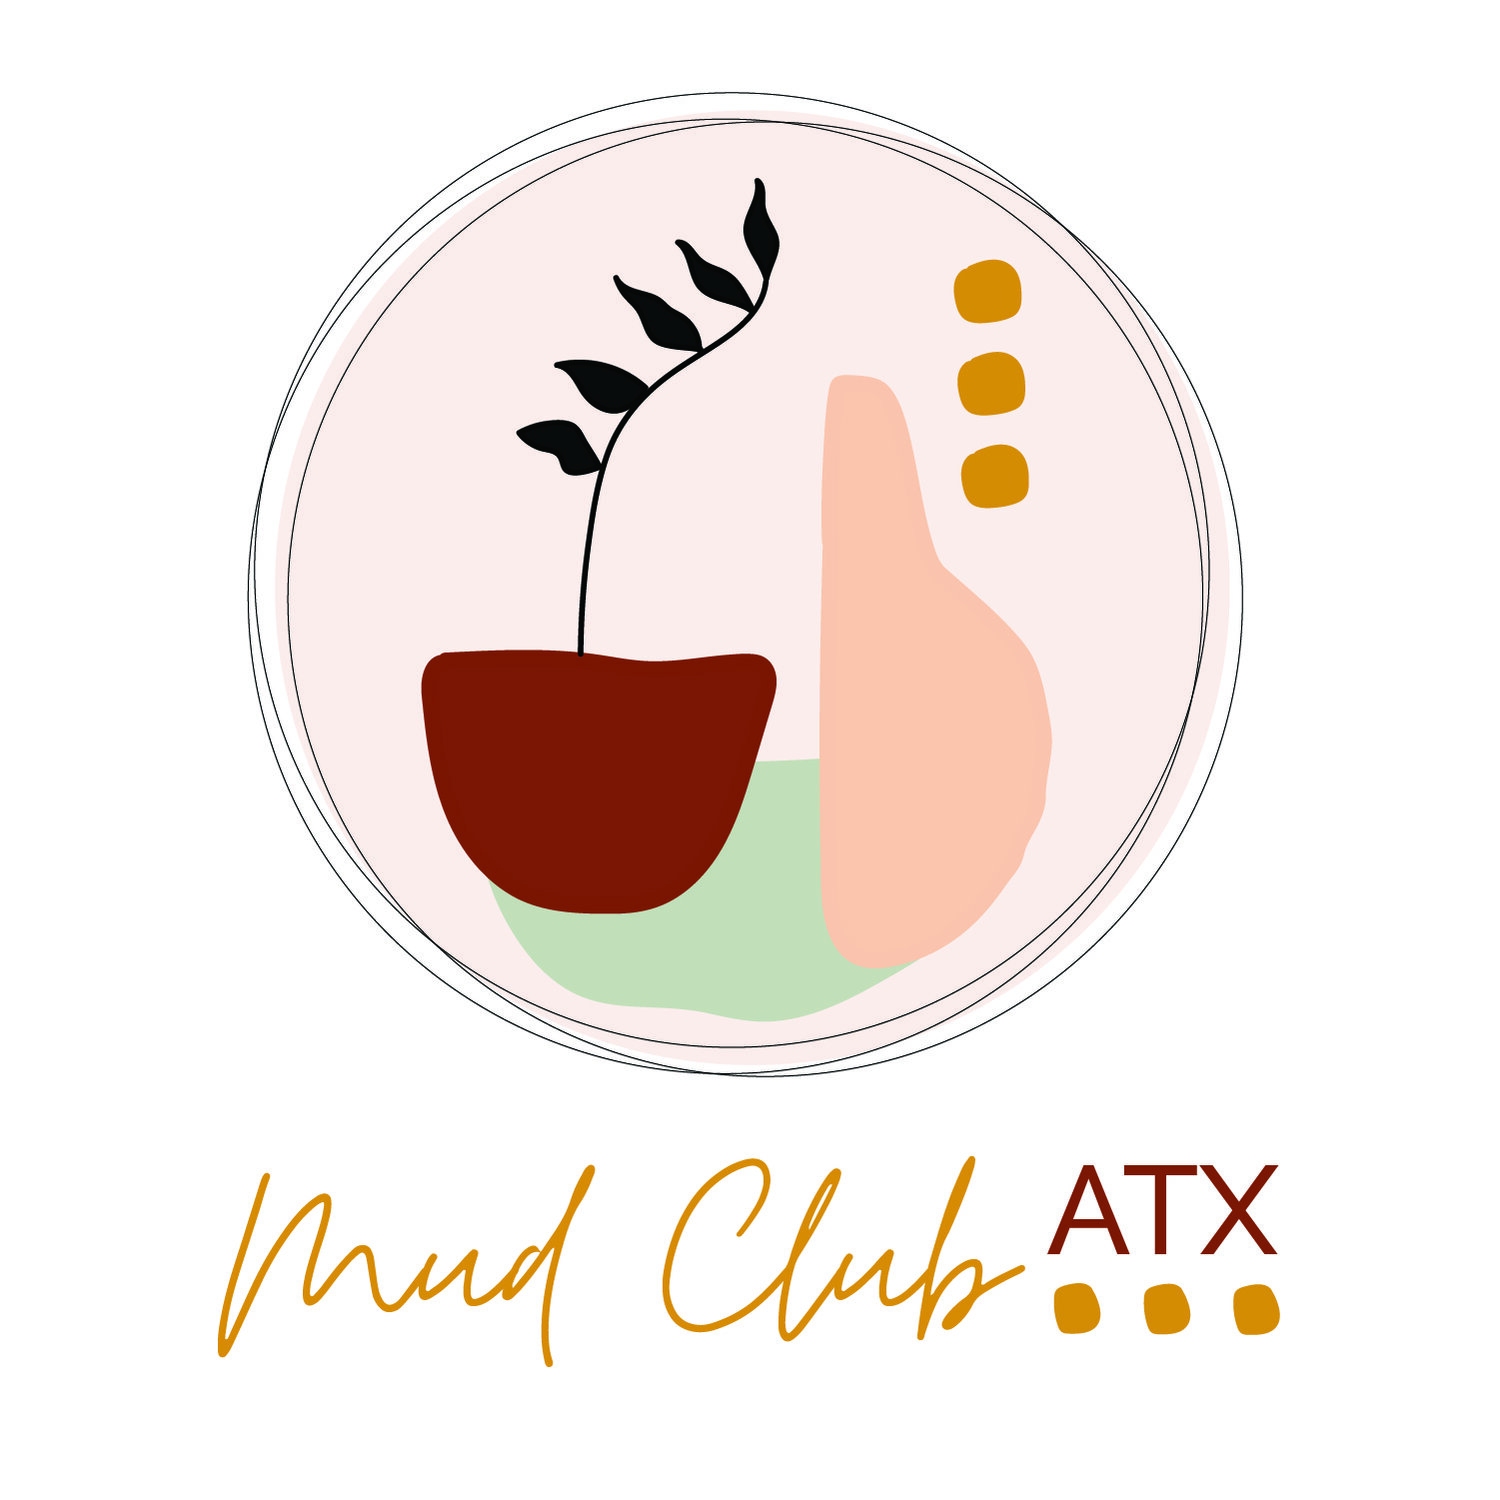 Mud Club ATX